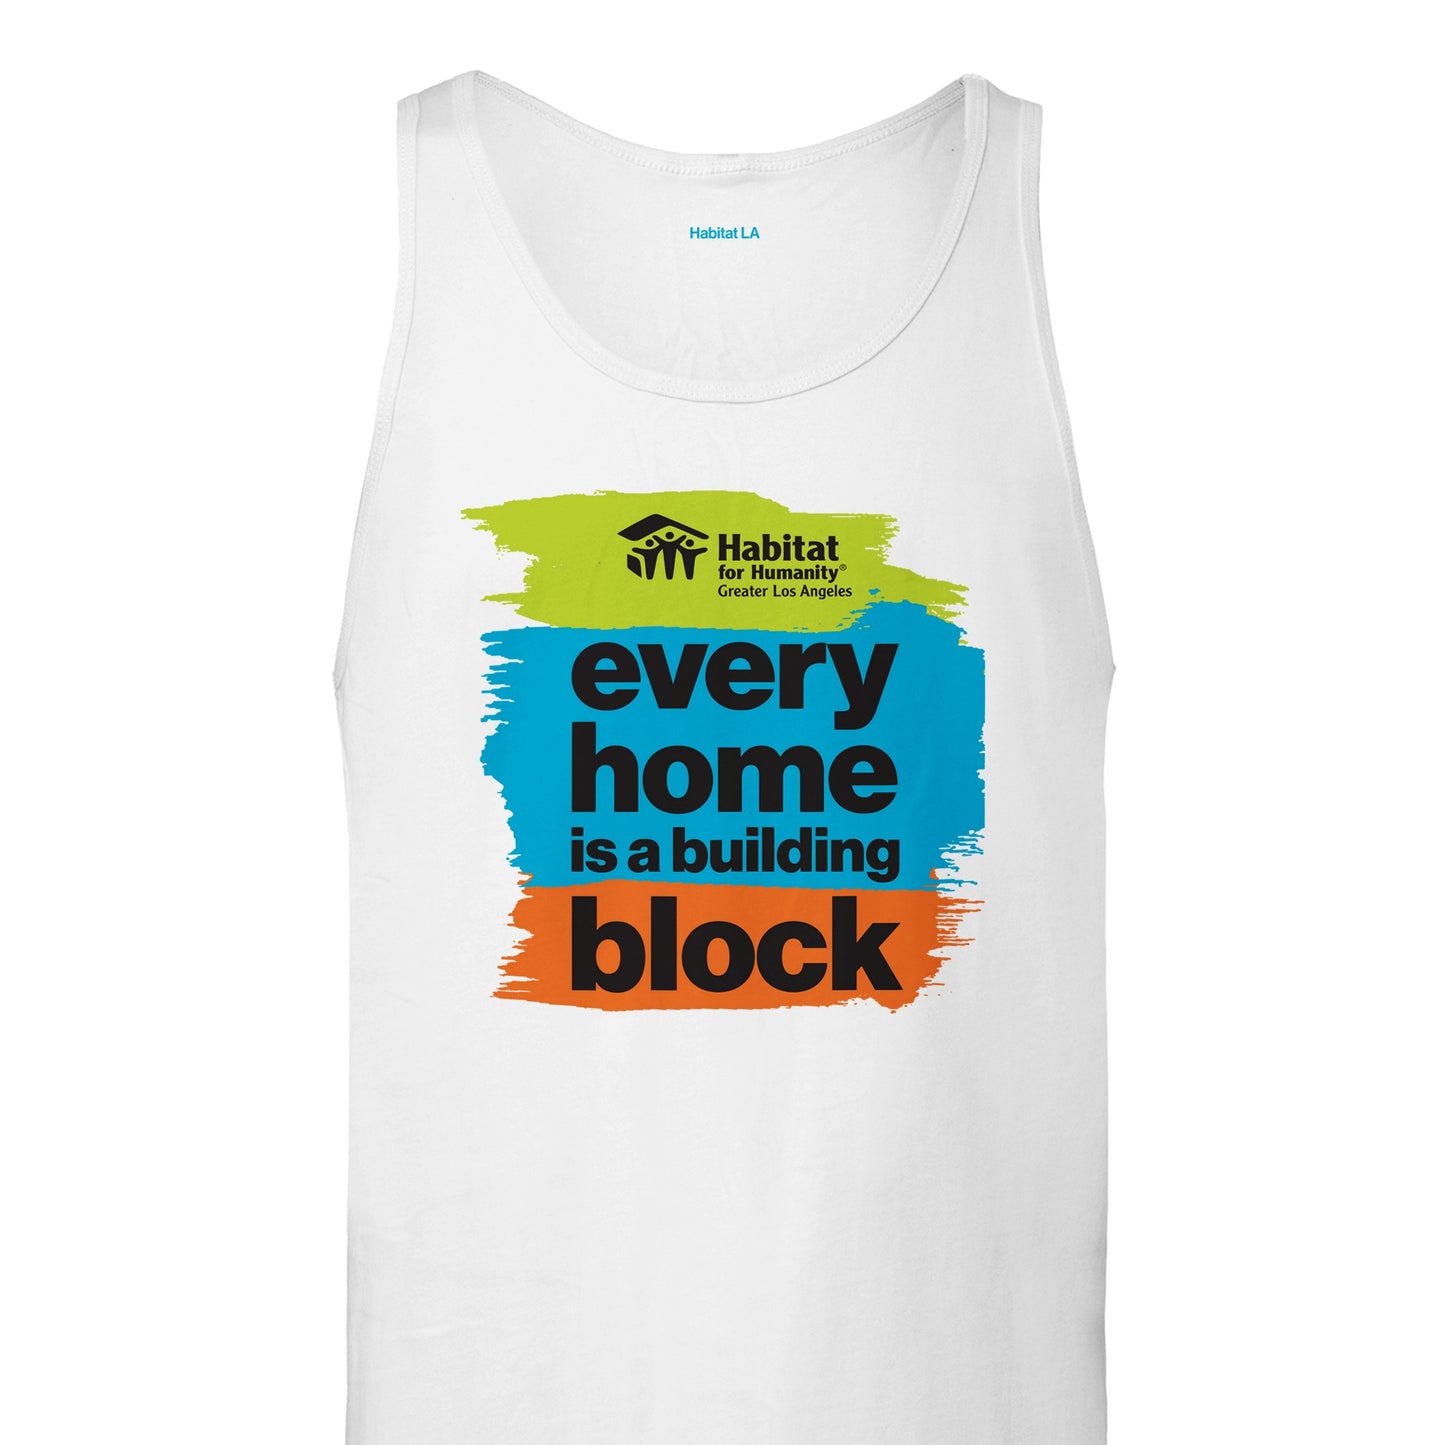 Camiseta sin mangas unisex premium "Every Home" 